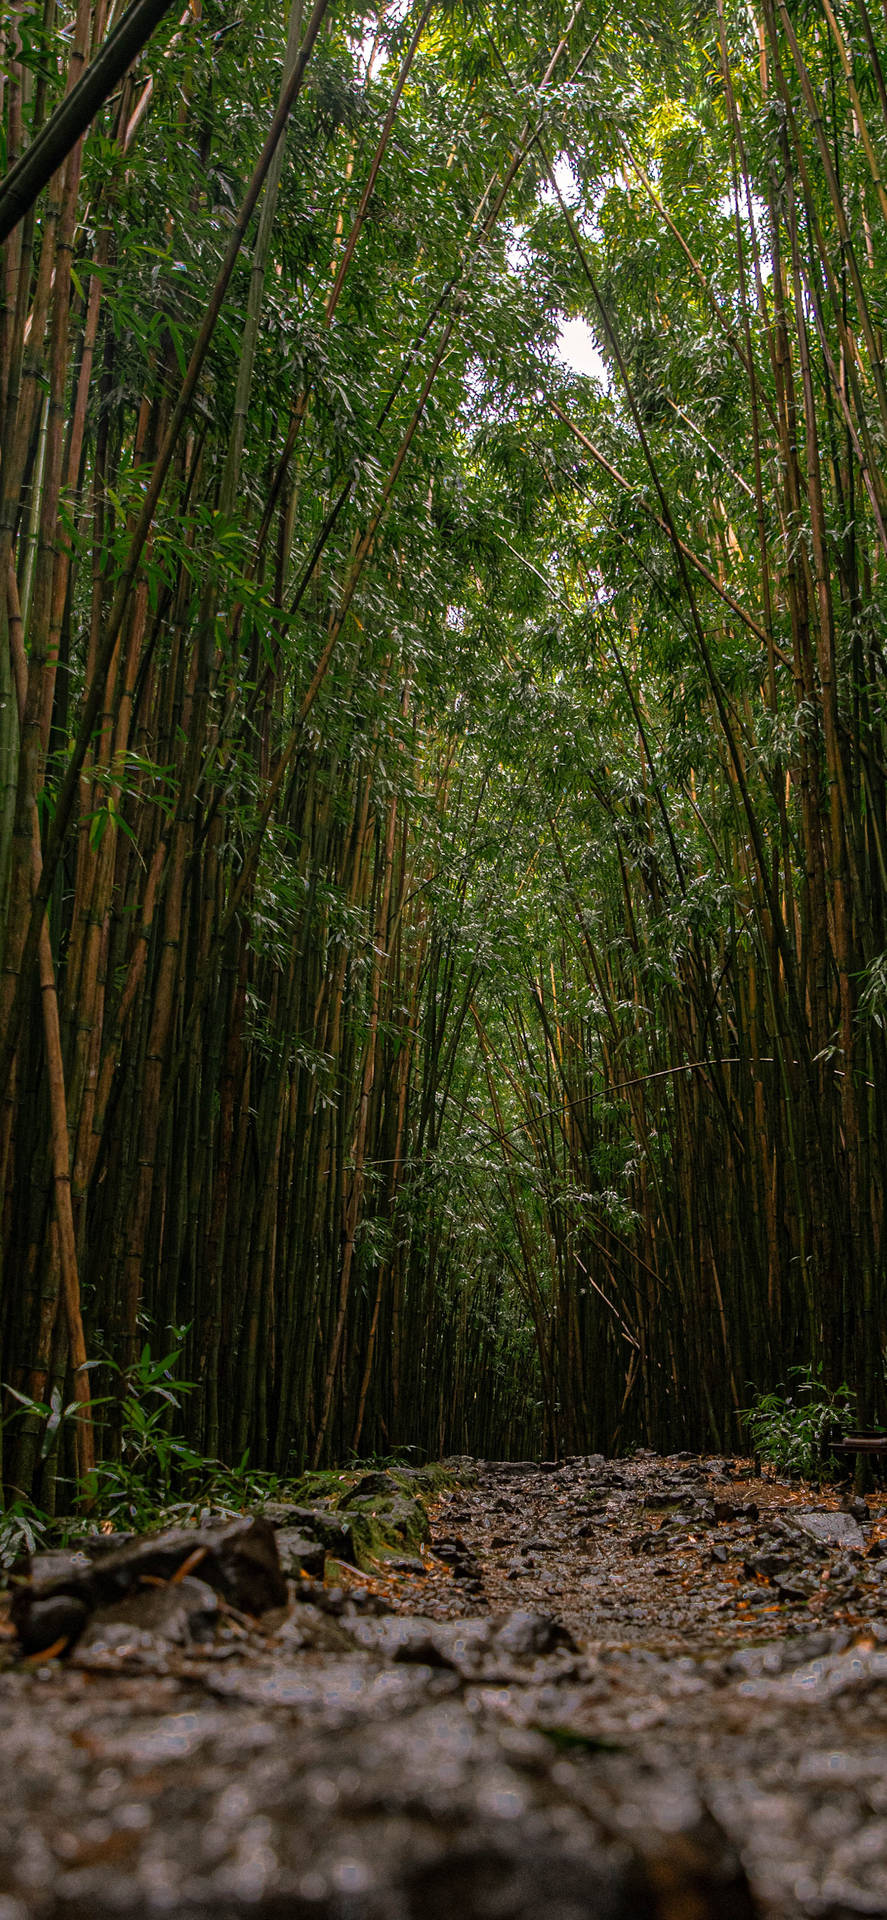 Wallpaper: Bambus skovgulv IPhone Tapet Wallpaper